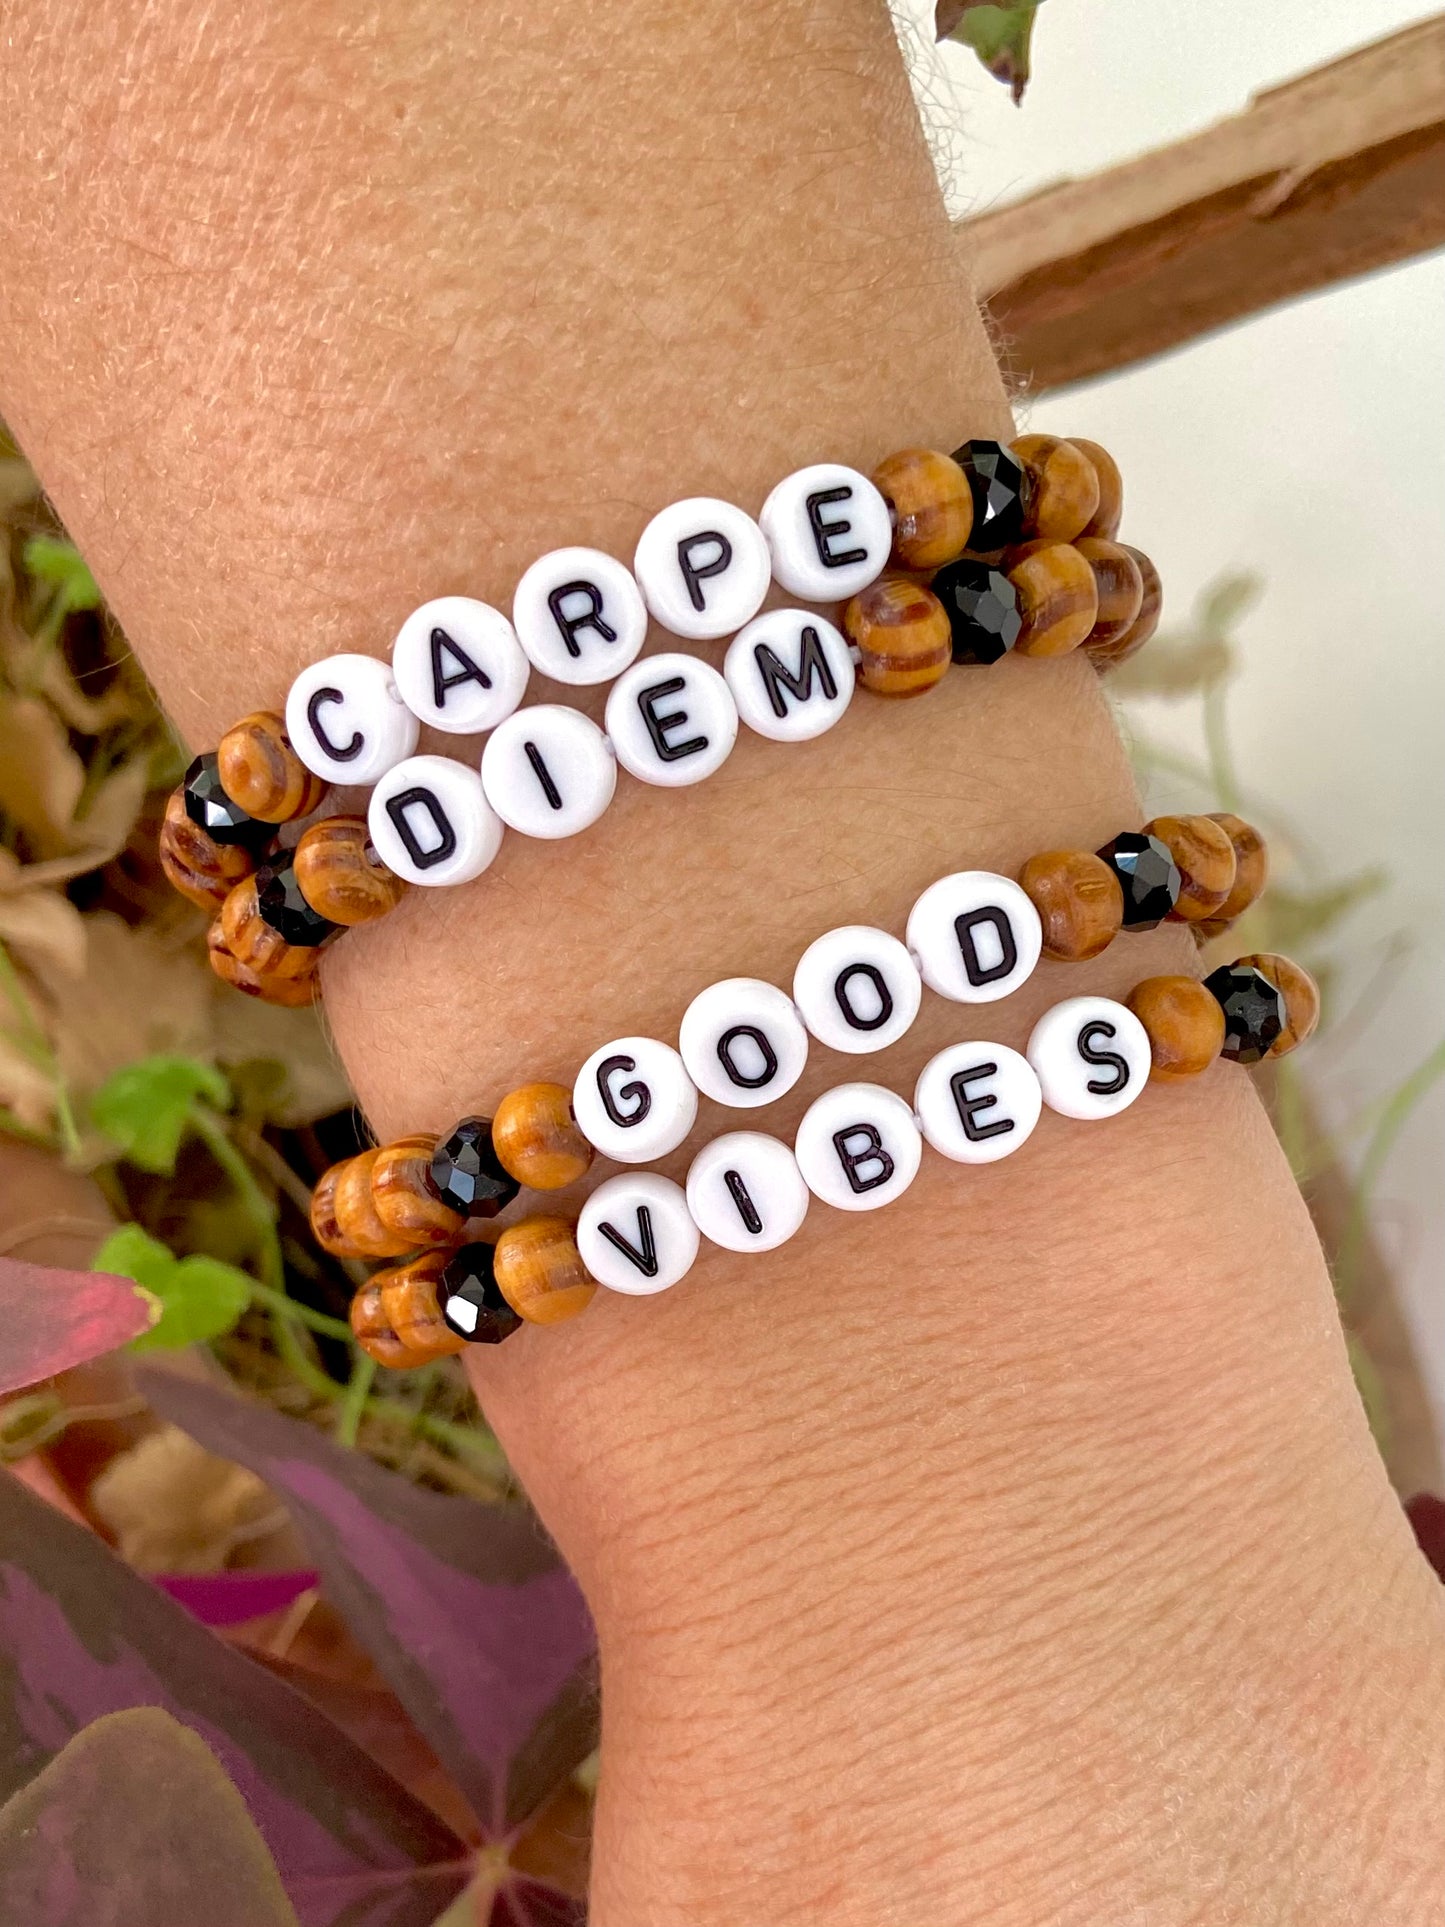 Deux bracelets message positif good vibes carpe diem